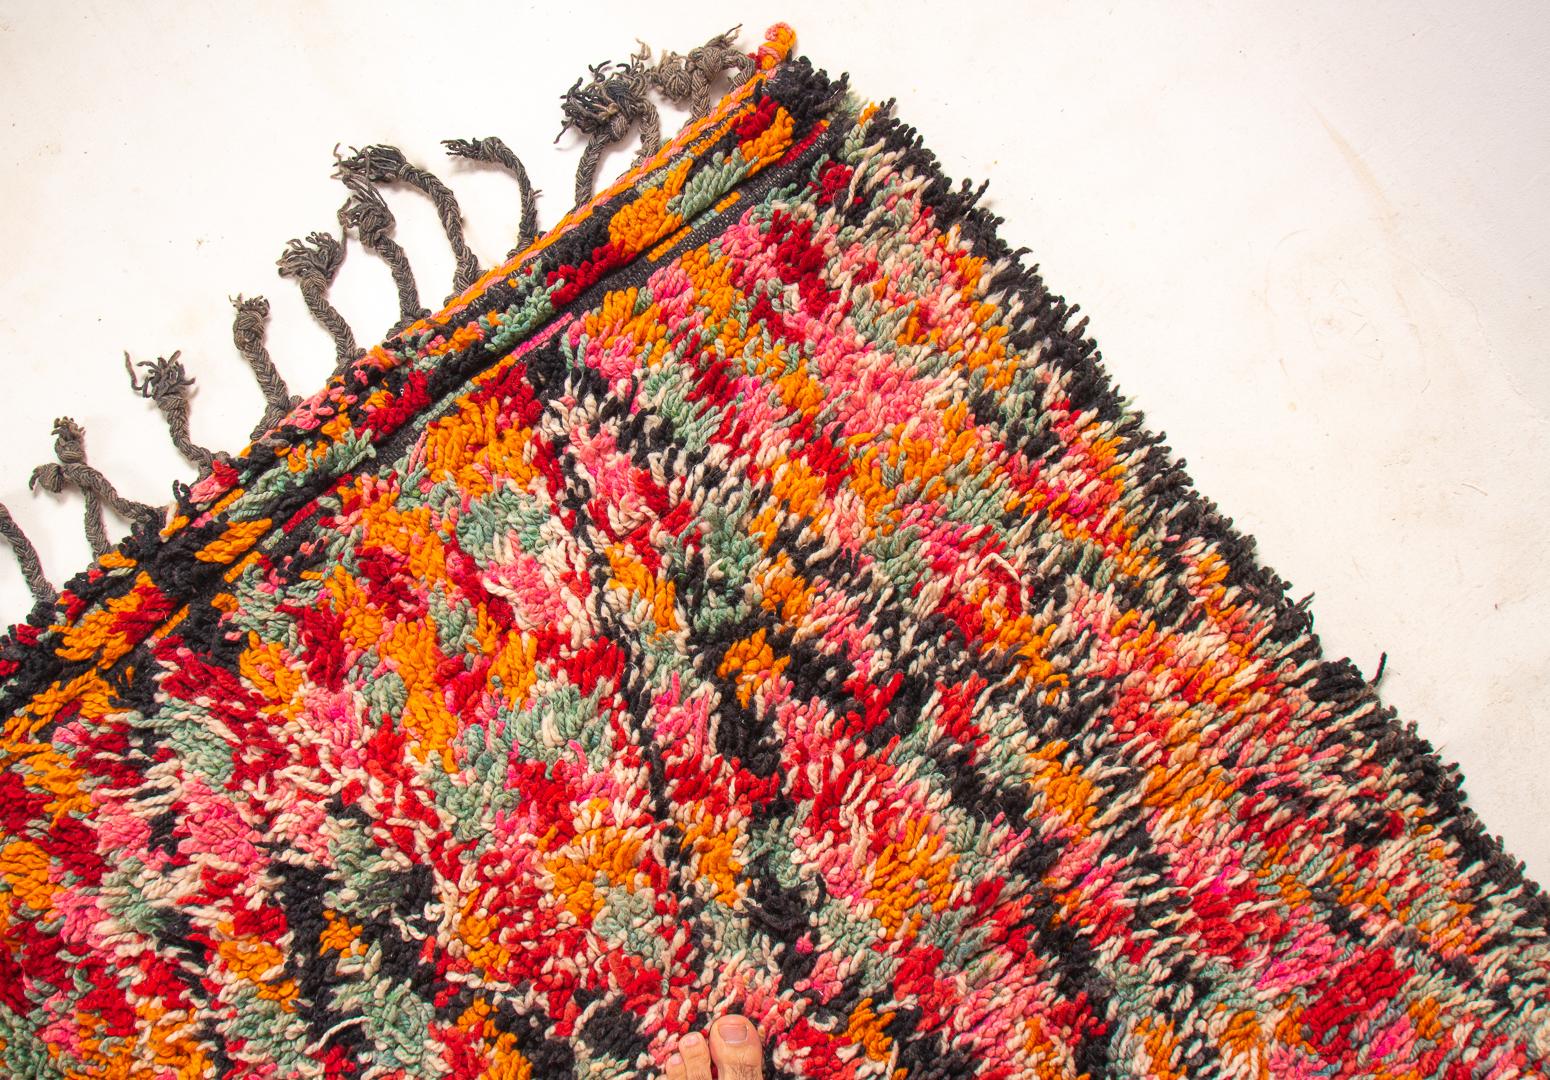 Vintage Beni M'Guild Marokkanischer Teppich 

Verwandeln Sie Ihren Raum mit diesem fesselnden Vintage-Teppich. Die lebhaften Muster und die lebendigen Farben verschmelzen auf wunderbare Weise und sorgen für eine harmonische und fröhliche Atmosphäre.